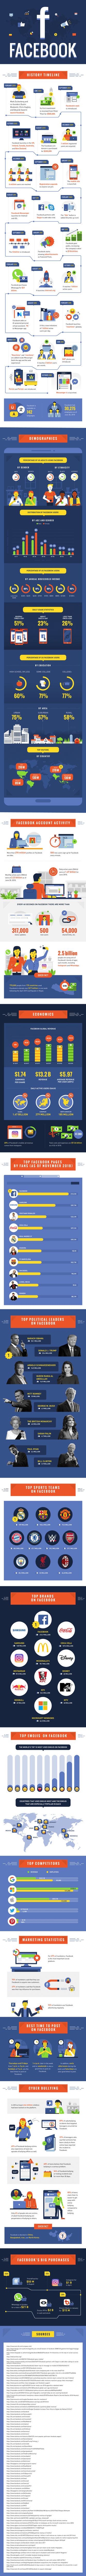 Facebook Statistics Infographic